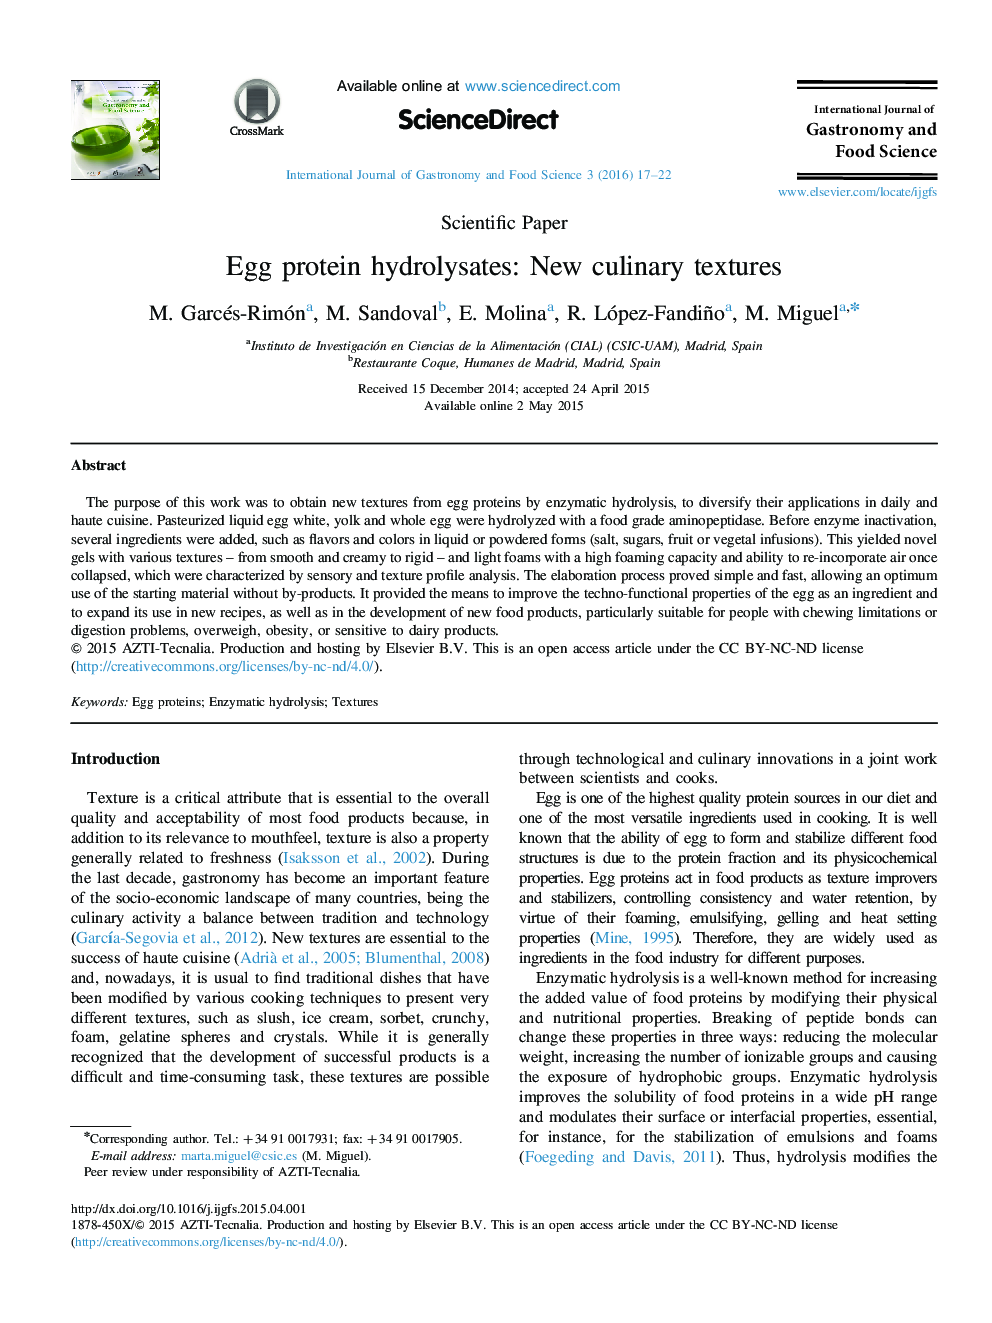 پروتئین هیدرولیز تخم مرغ: بافت جدید آشپزی